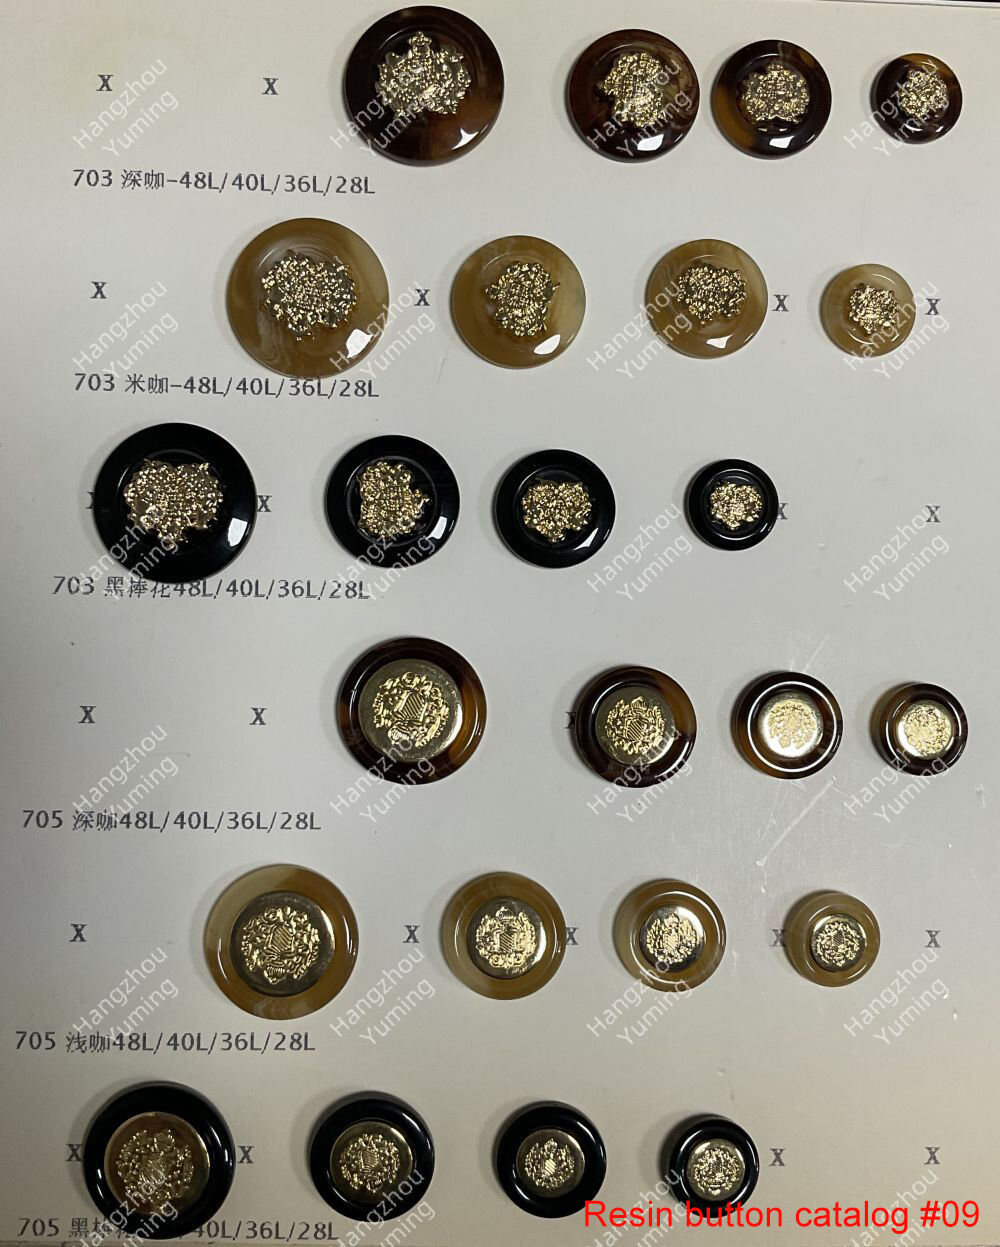 Resin button catalog